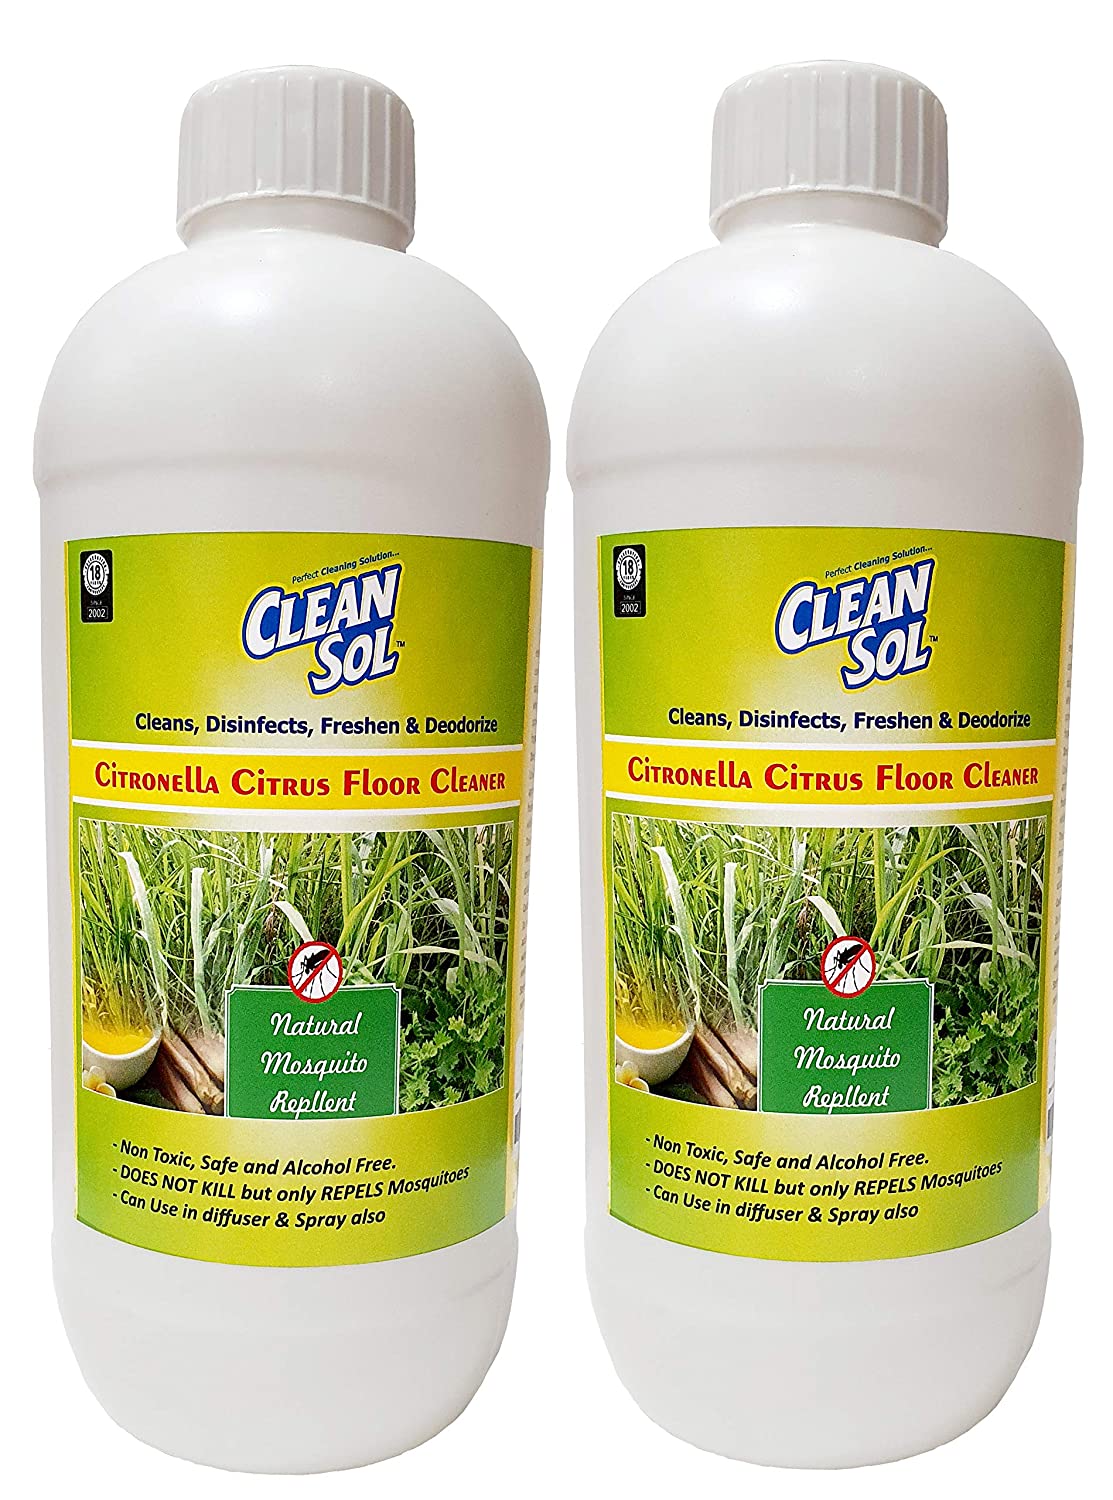 Cleansol Citronella Citrus Floor Cleaner